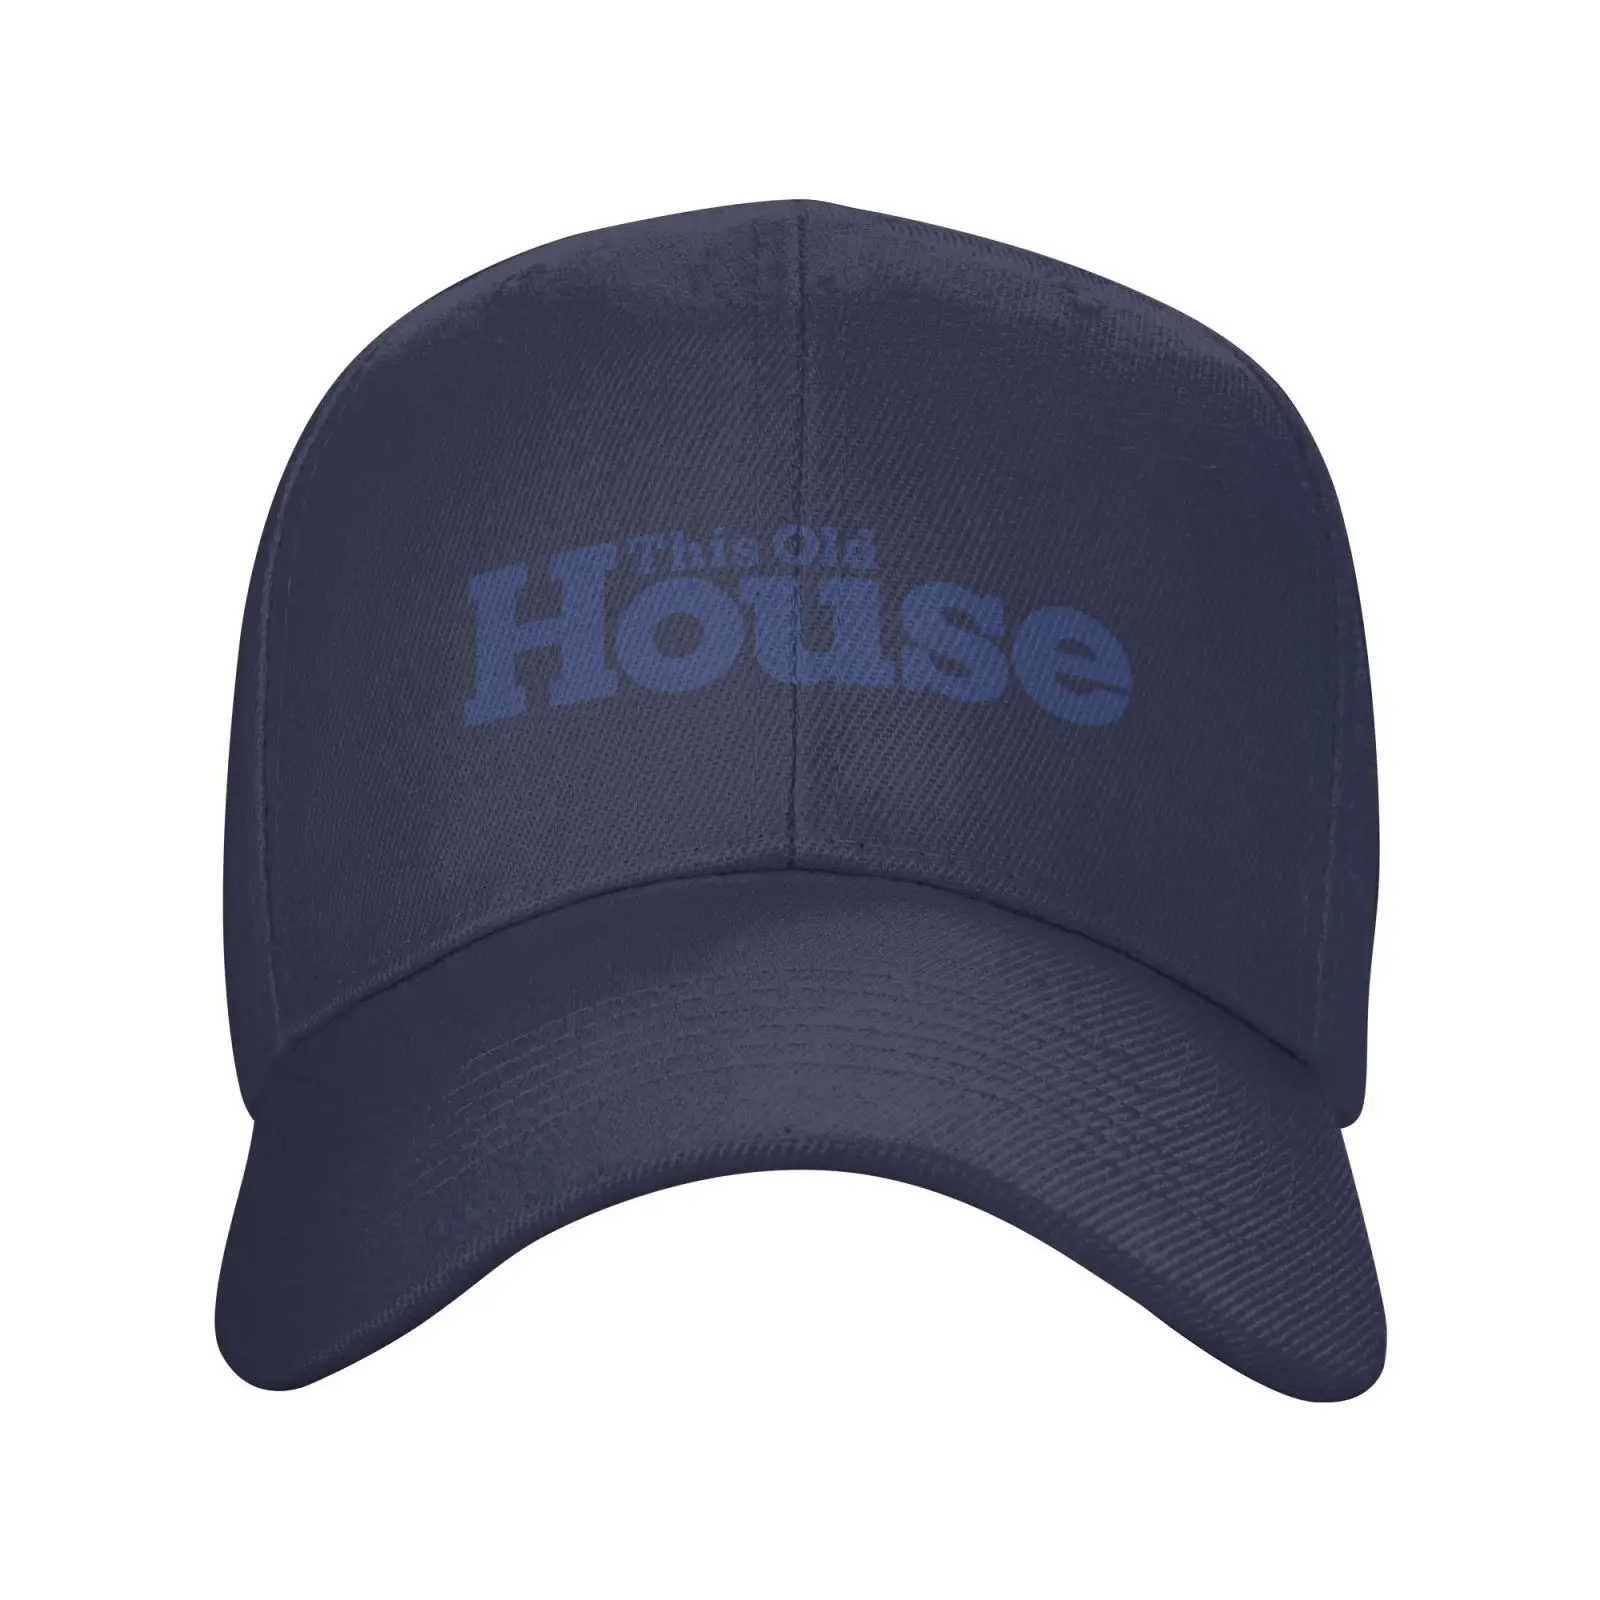 Графическая повседневная джинсовая кепка с логотипом этого Старого Дома, Вязаная шапка, Бейсболка